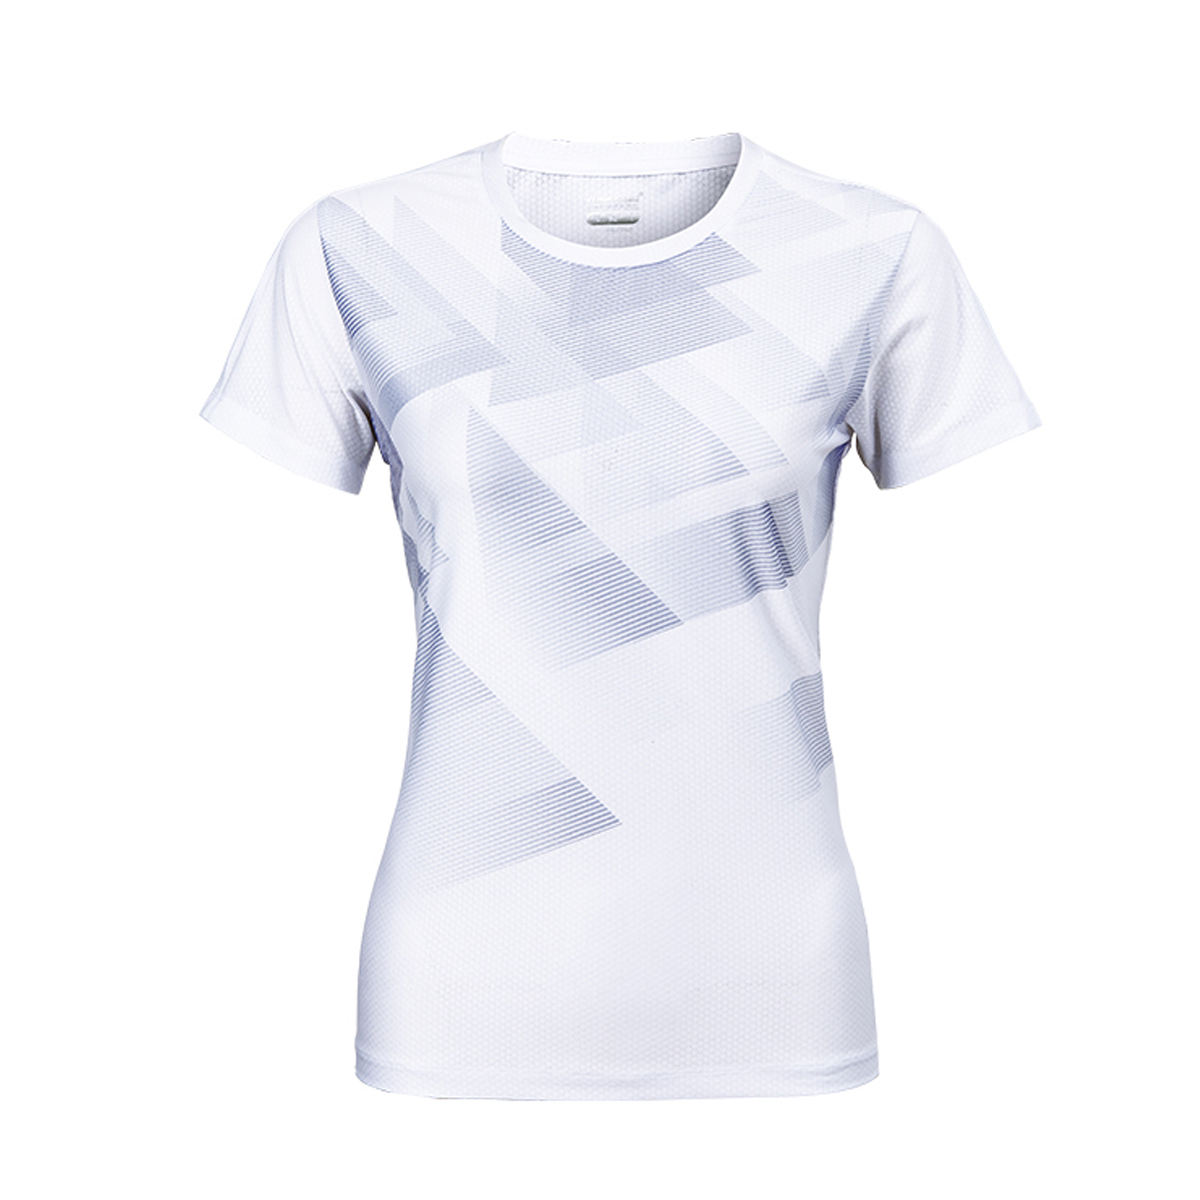 Женская футболка KAWASAKI A2941-3 WHITE (размеры: S, M, L, XL, 2XL). 